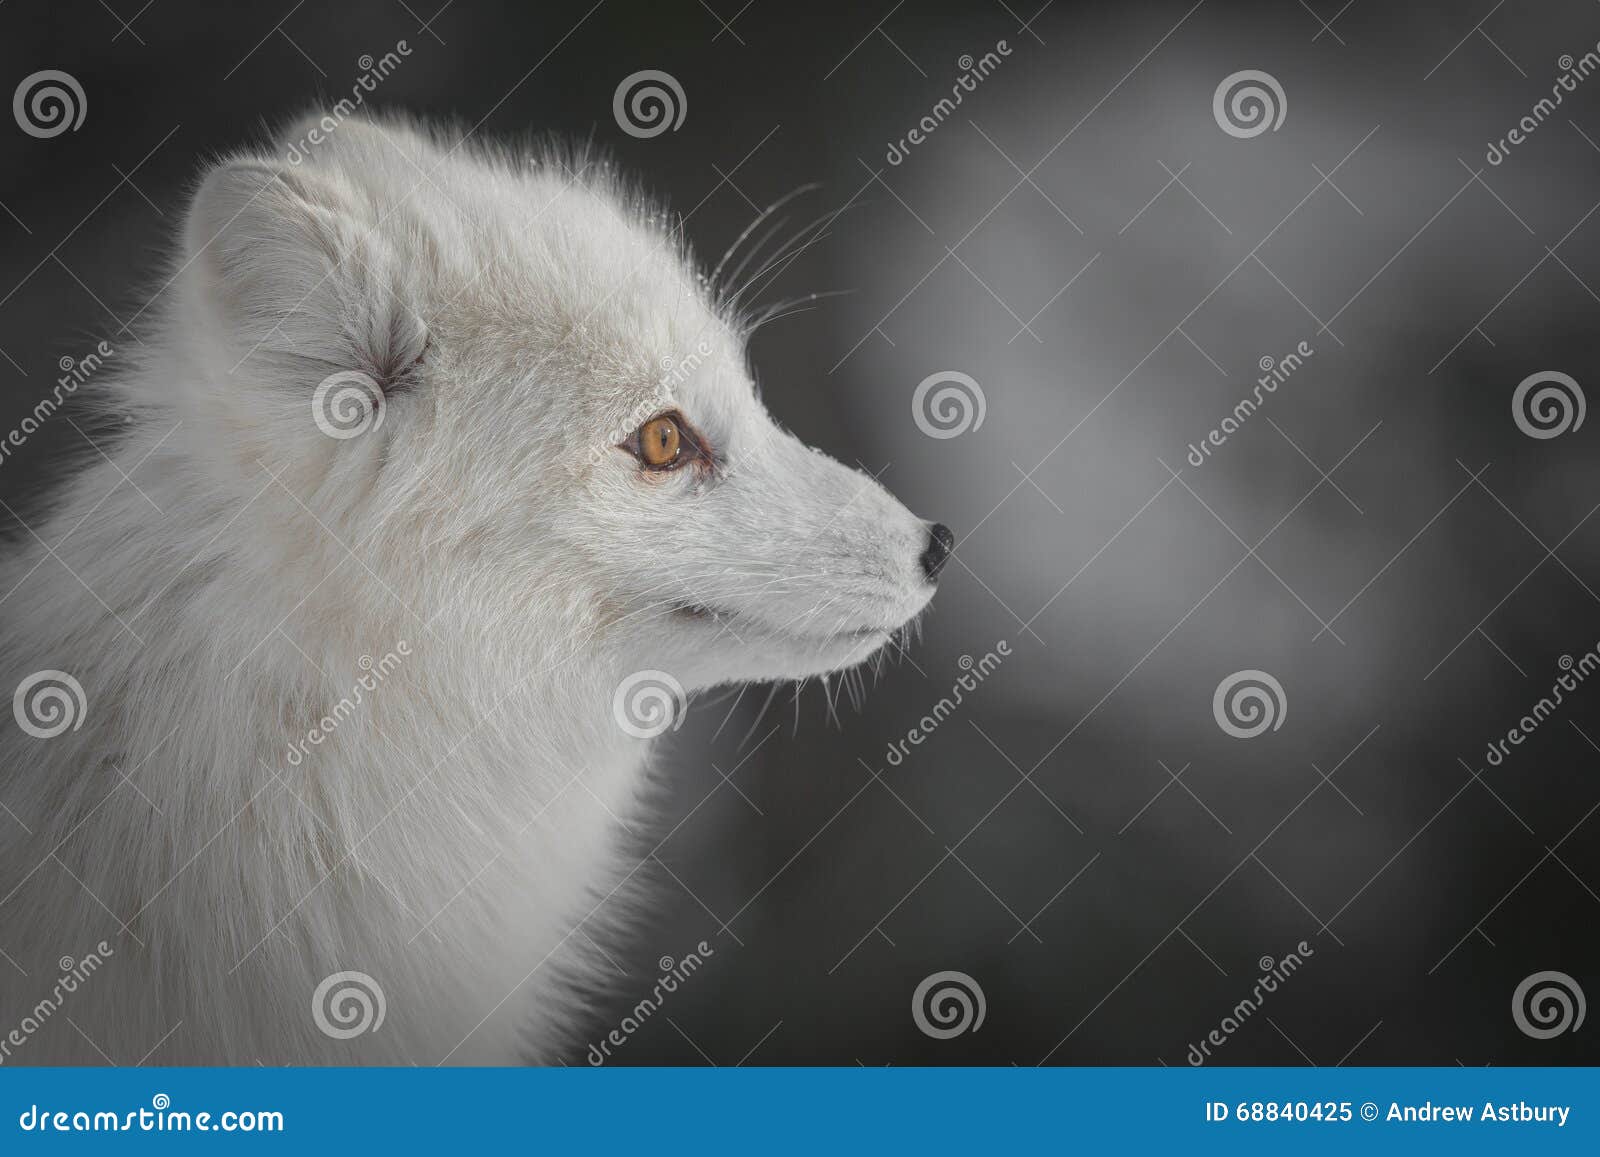 300,000+张最精彩的“白狐”图片 · 100%免费下载 · Pexels素材图片